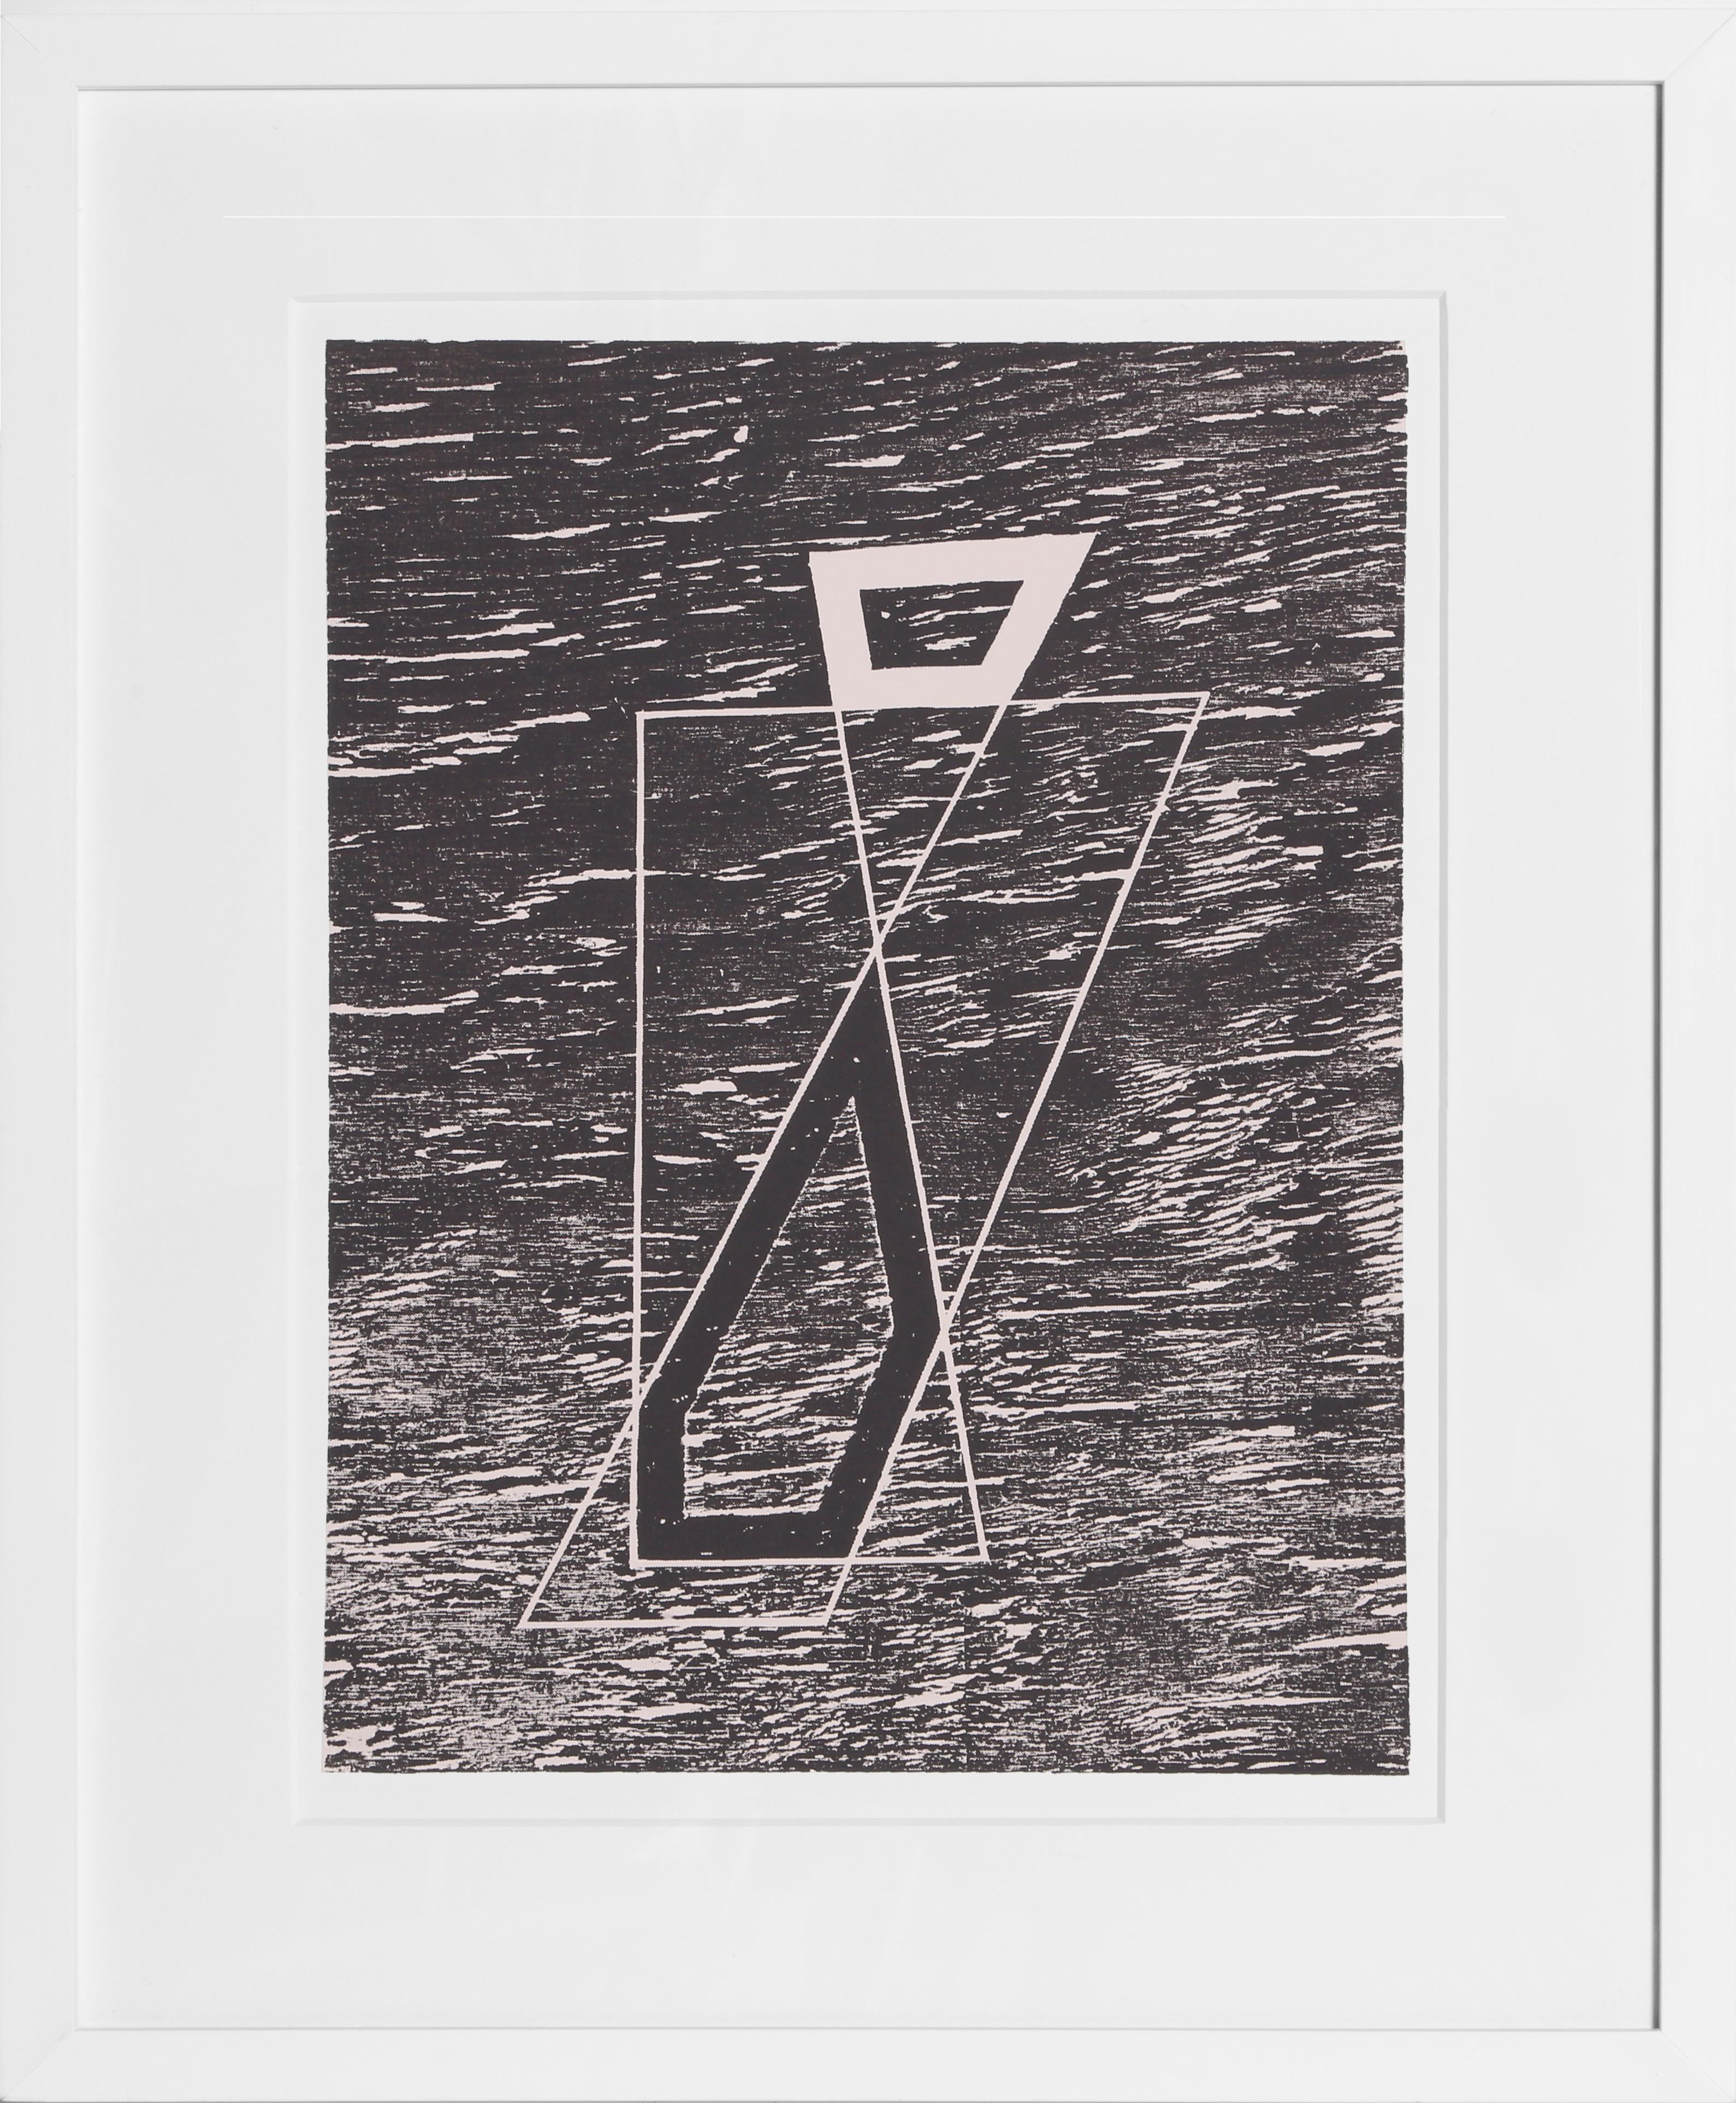 Le bois agissant comme de l'eau - P2, F20, I2, sérigraphie géométrique de Josef Albers